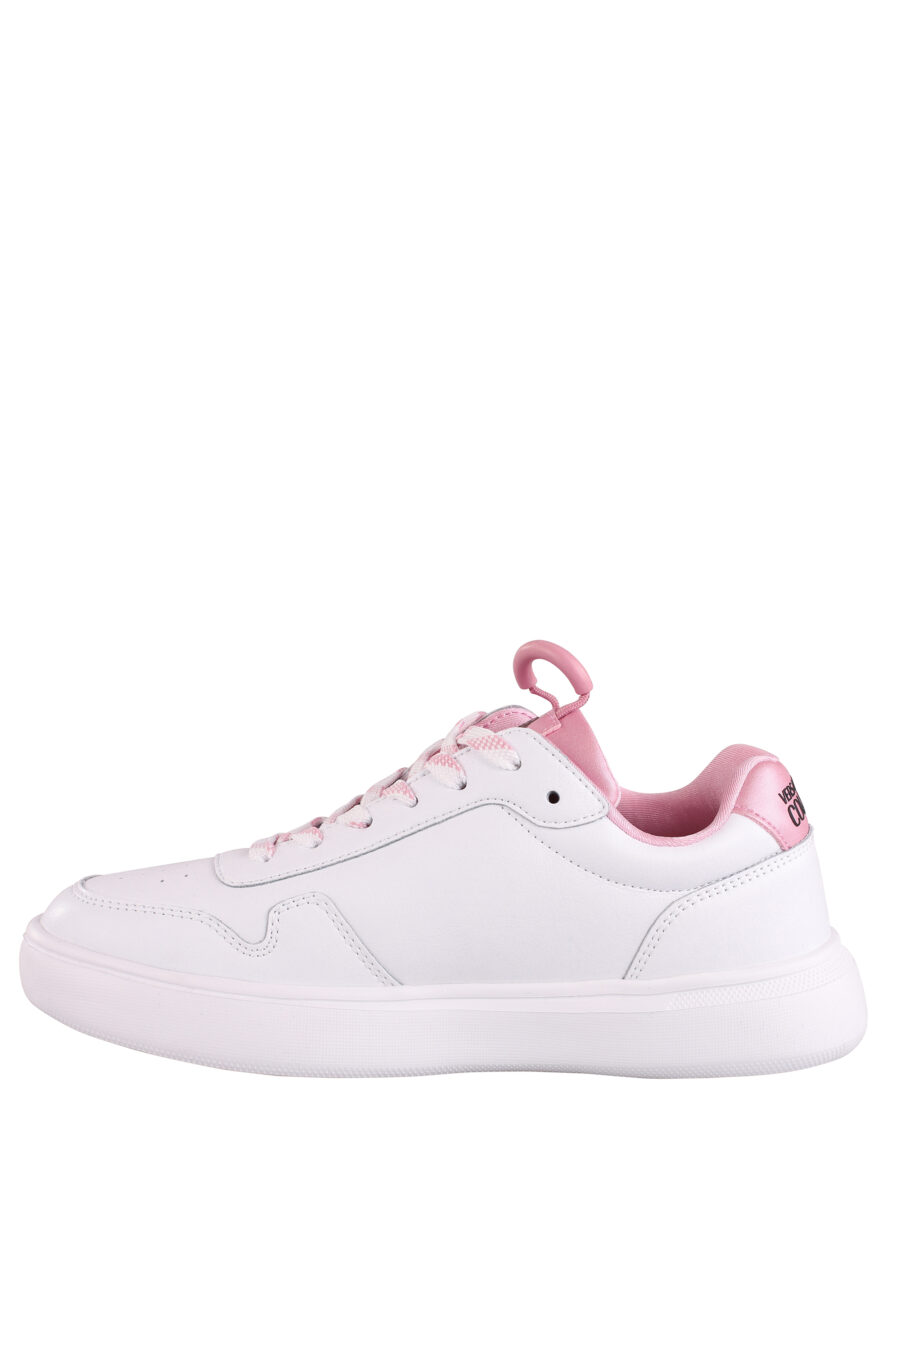 Zapatillas blancas con detalles y logo rosa - IMG 9019